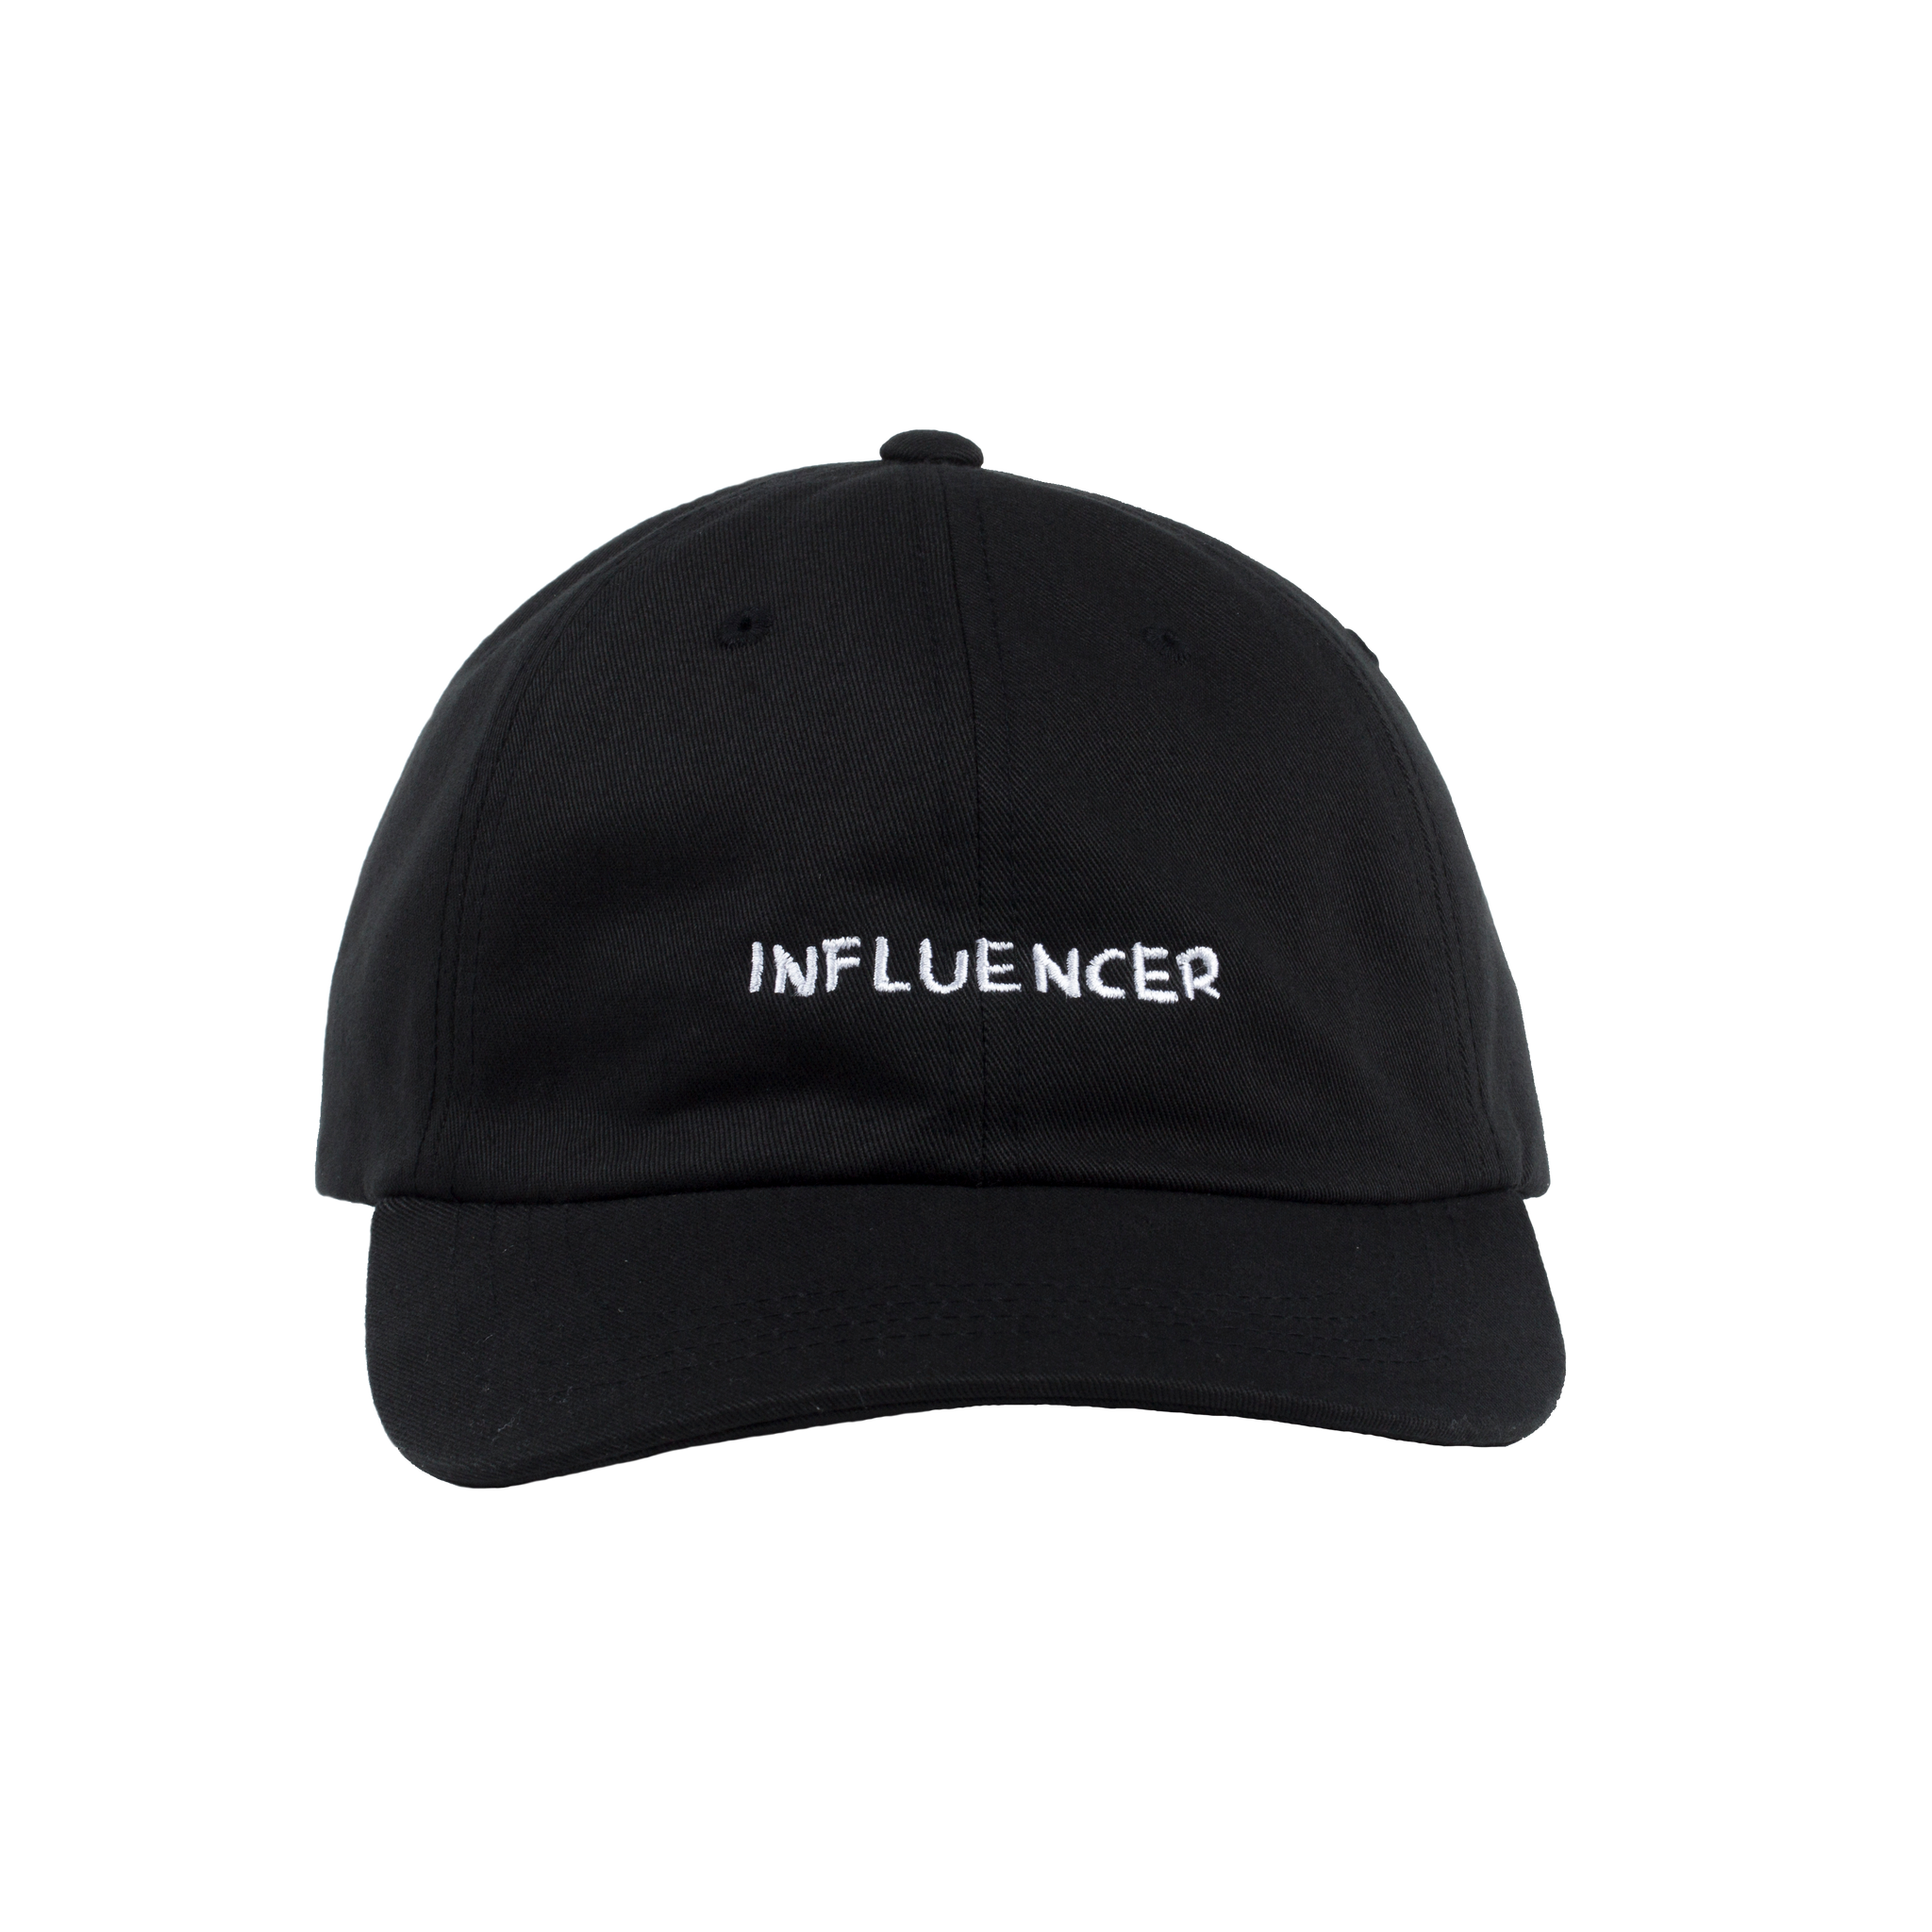 "influencer" dad hat